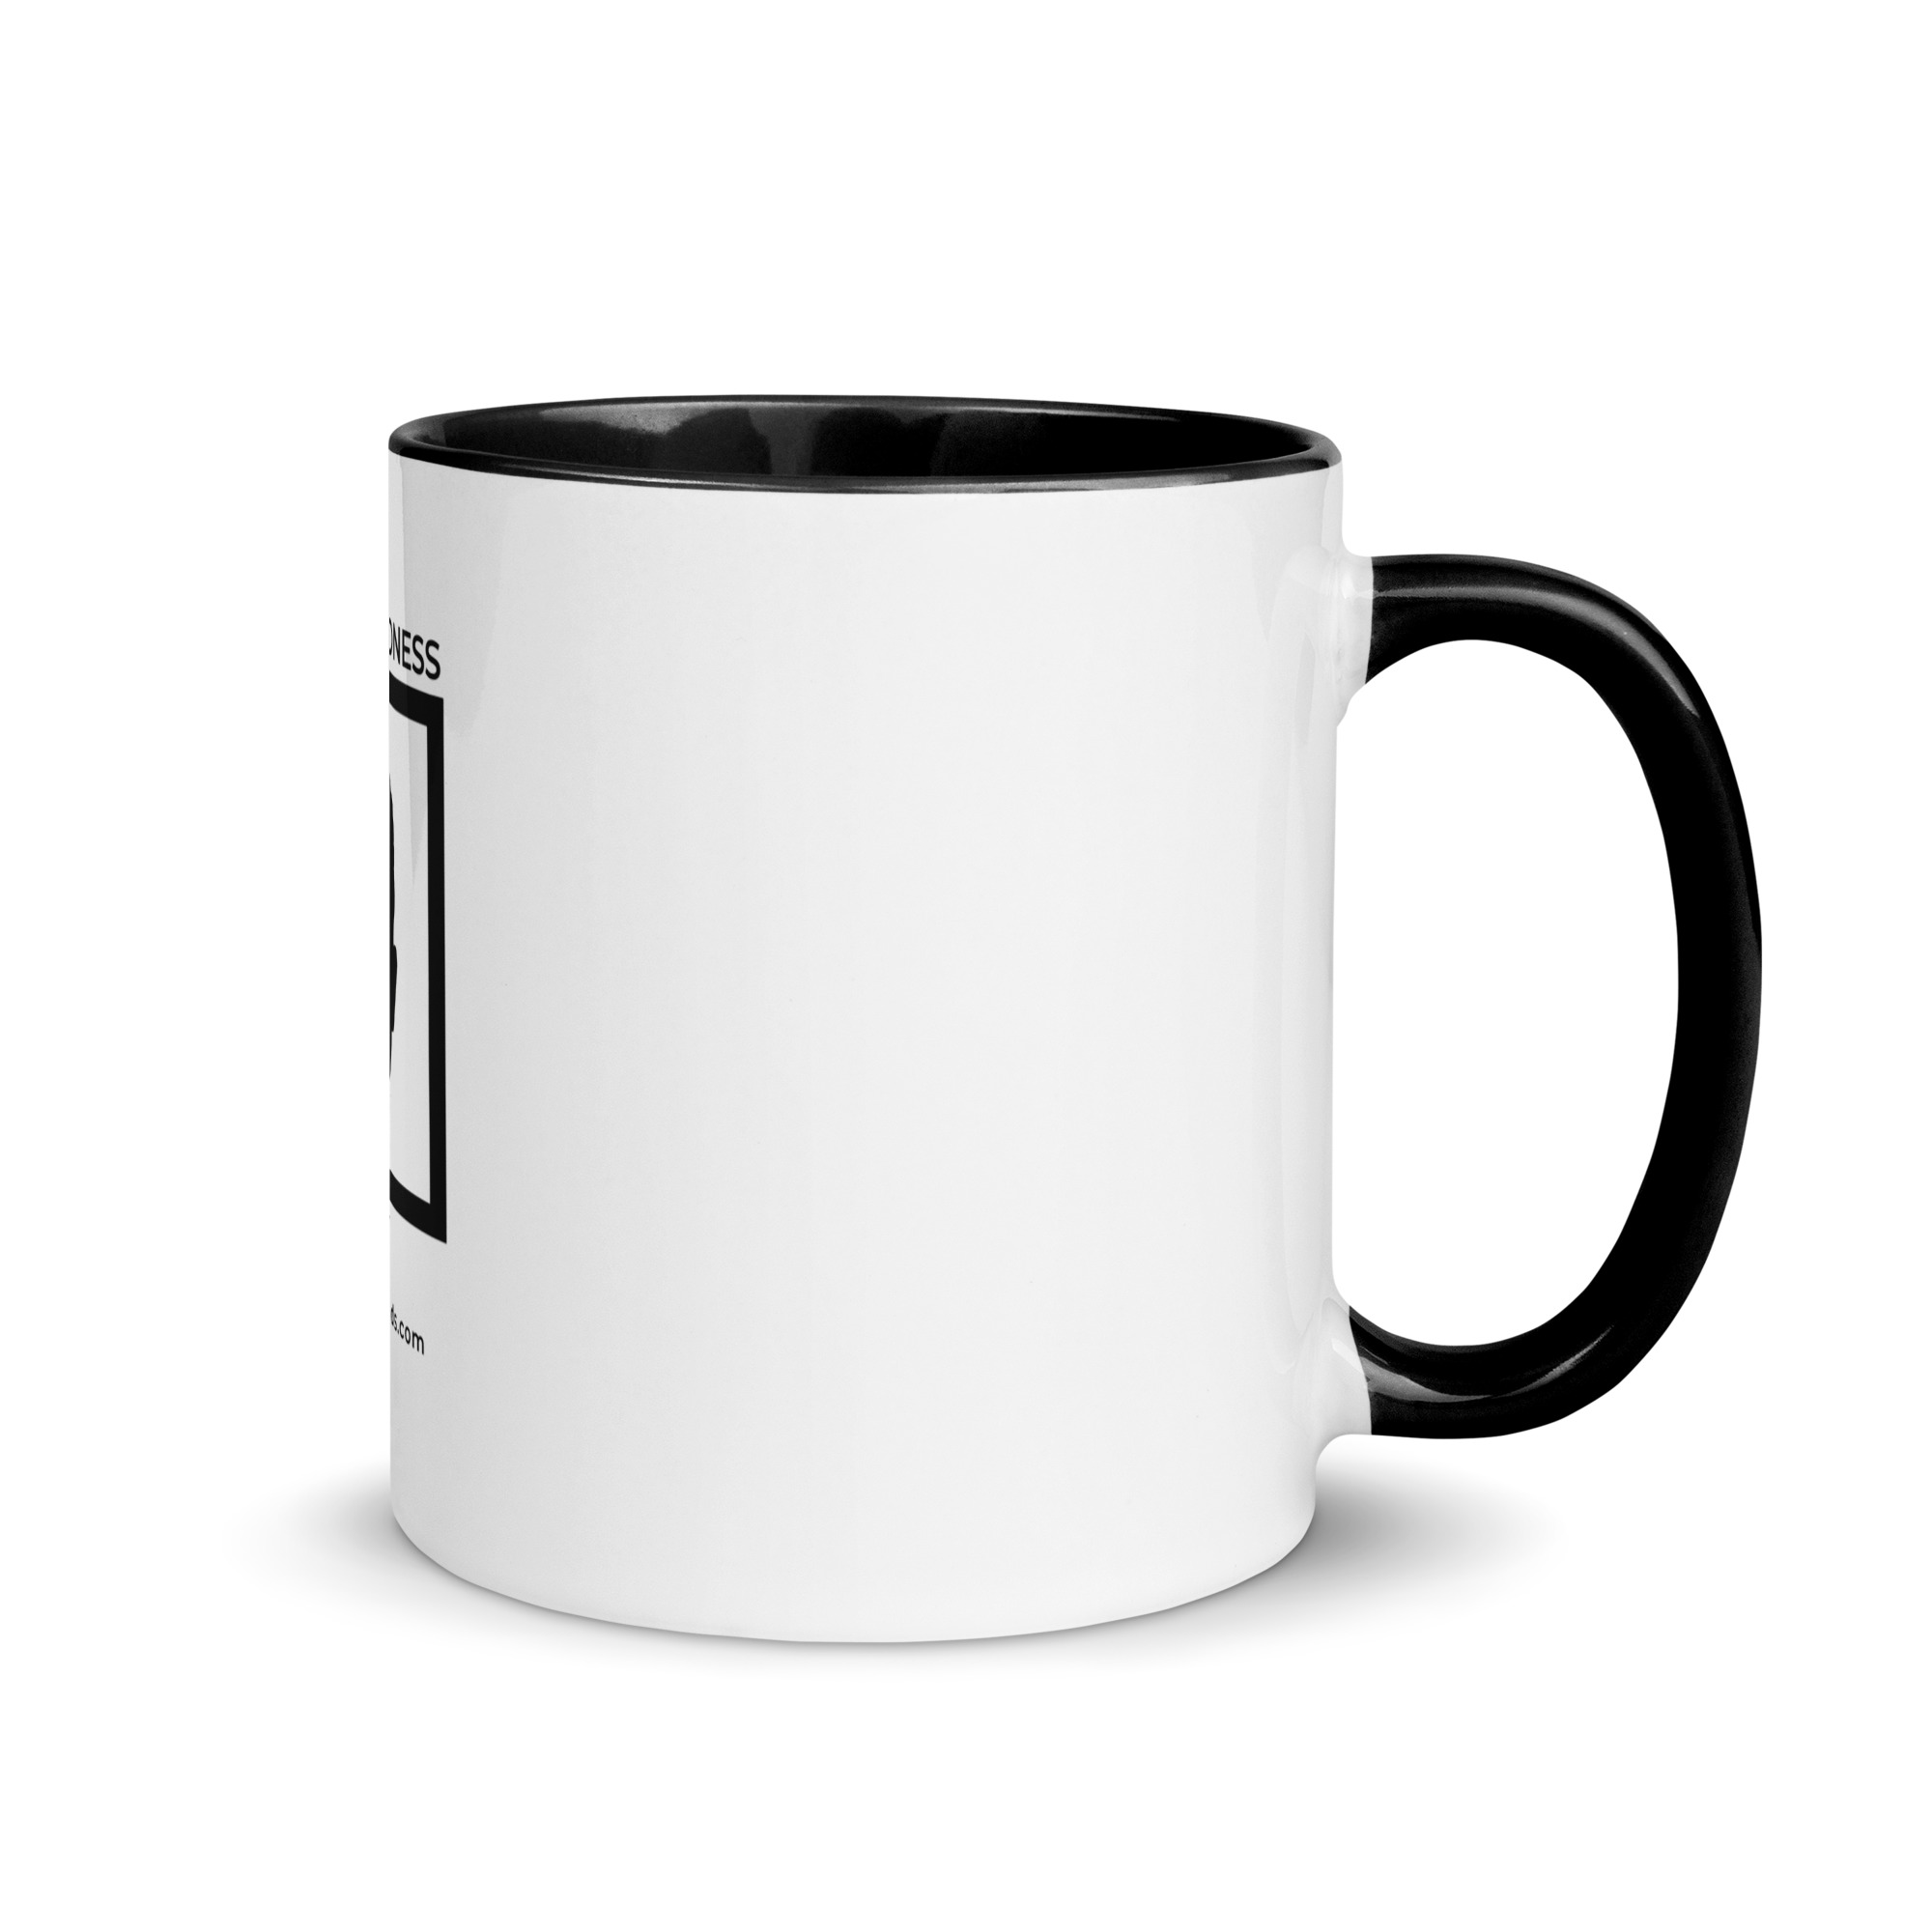 white-ceramic-mug-with-color-inside-black-11-oz-right-6522a1a4038f6.jpg